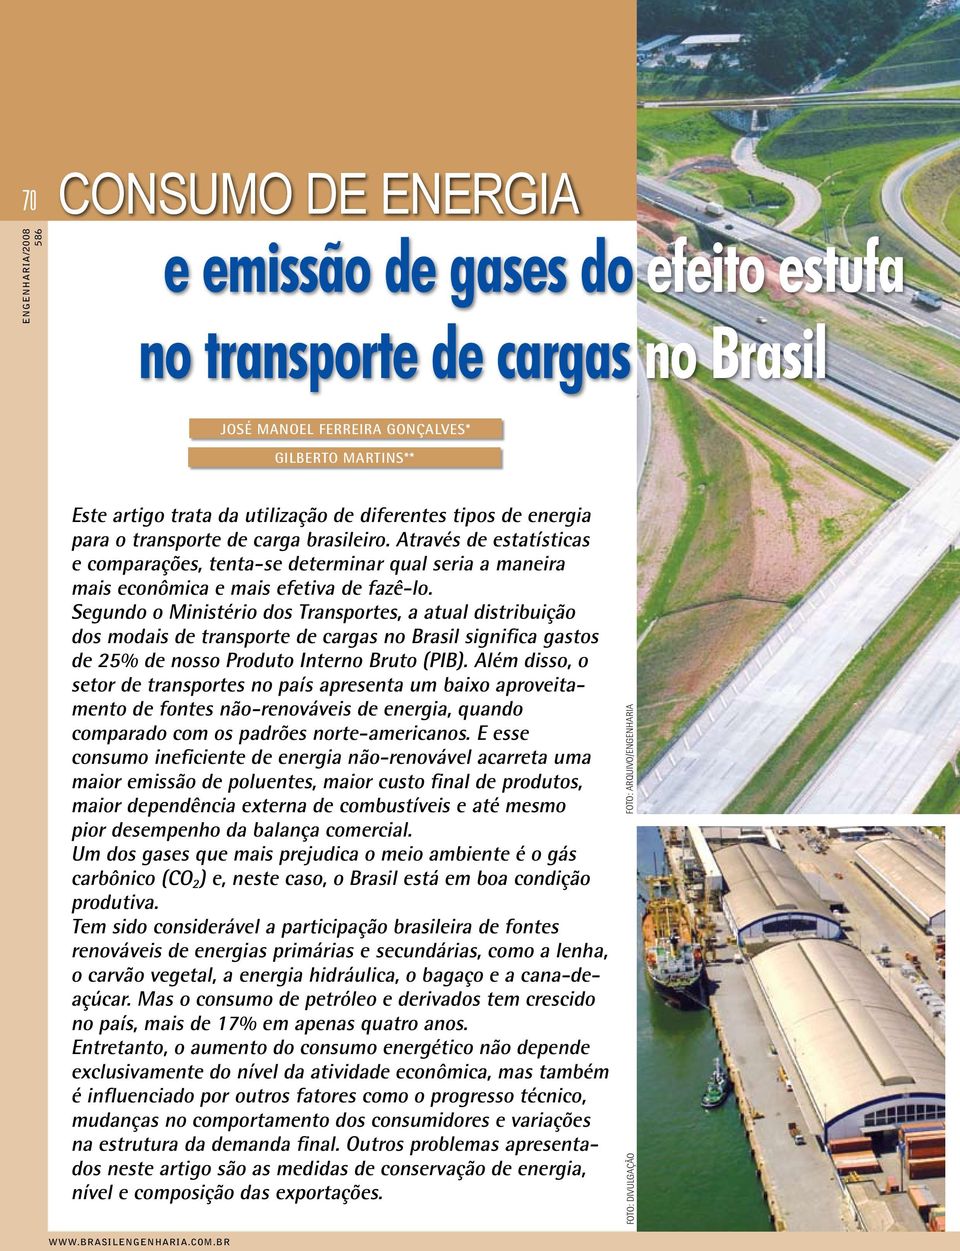 Segundo o Ministério dos Transportes, a atual distribuição dos modais de transporte de cargas no Brasil significa gastos de 25% de nosso Produto Interno Bruto (PIB).